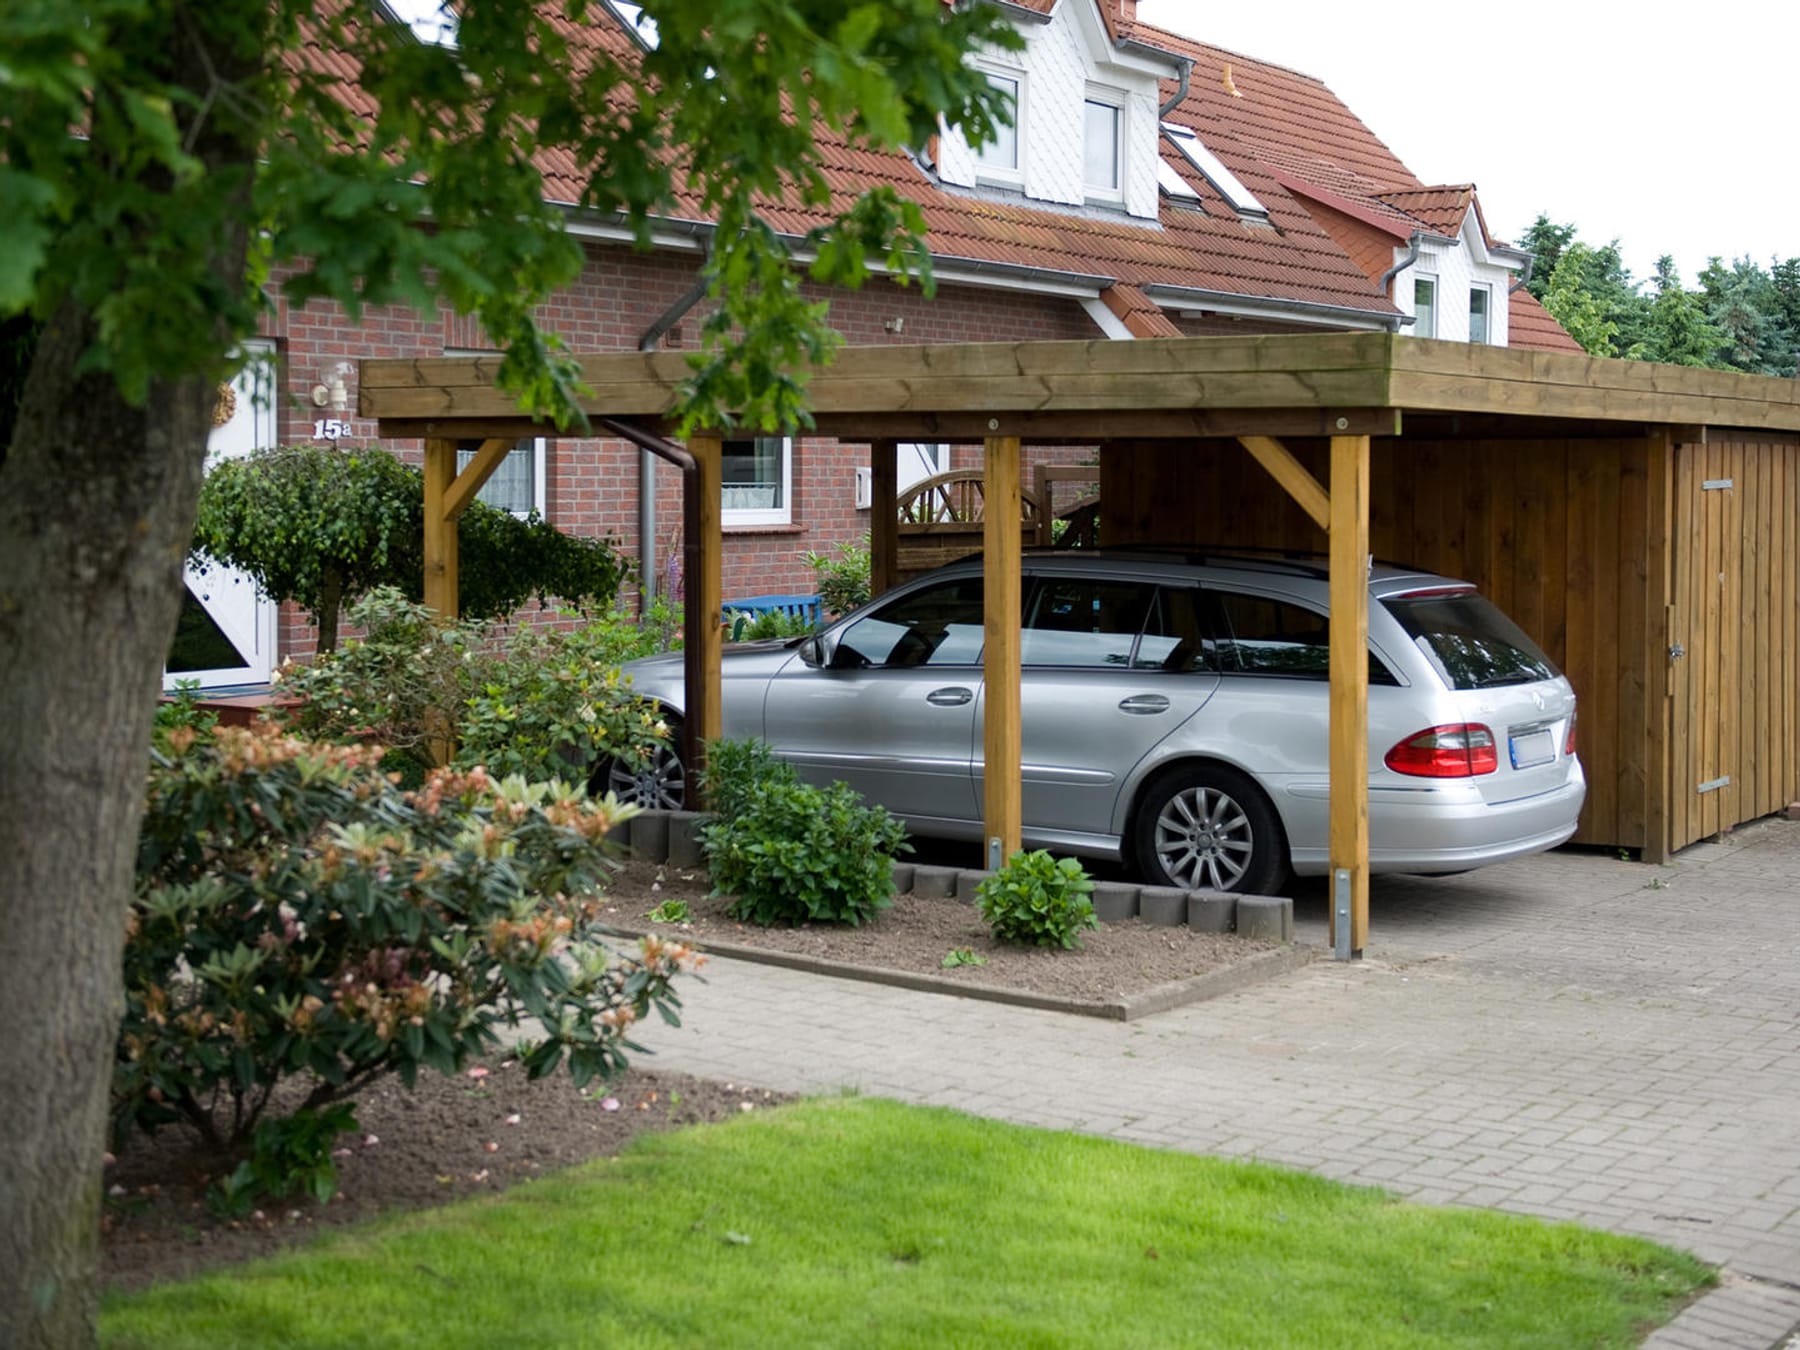 Garage oder Carport: Was ist besser für Ihr Auto?